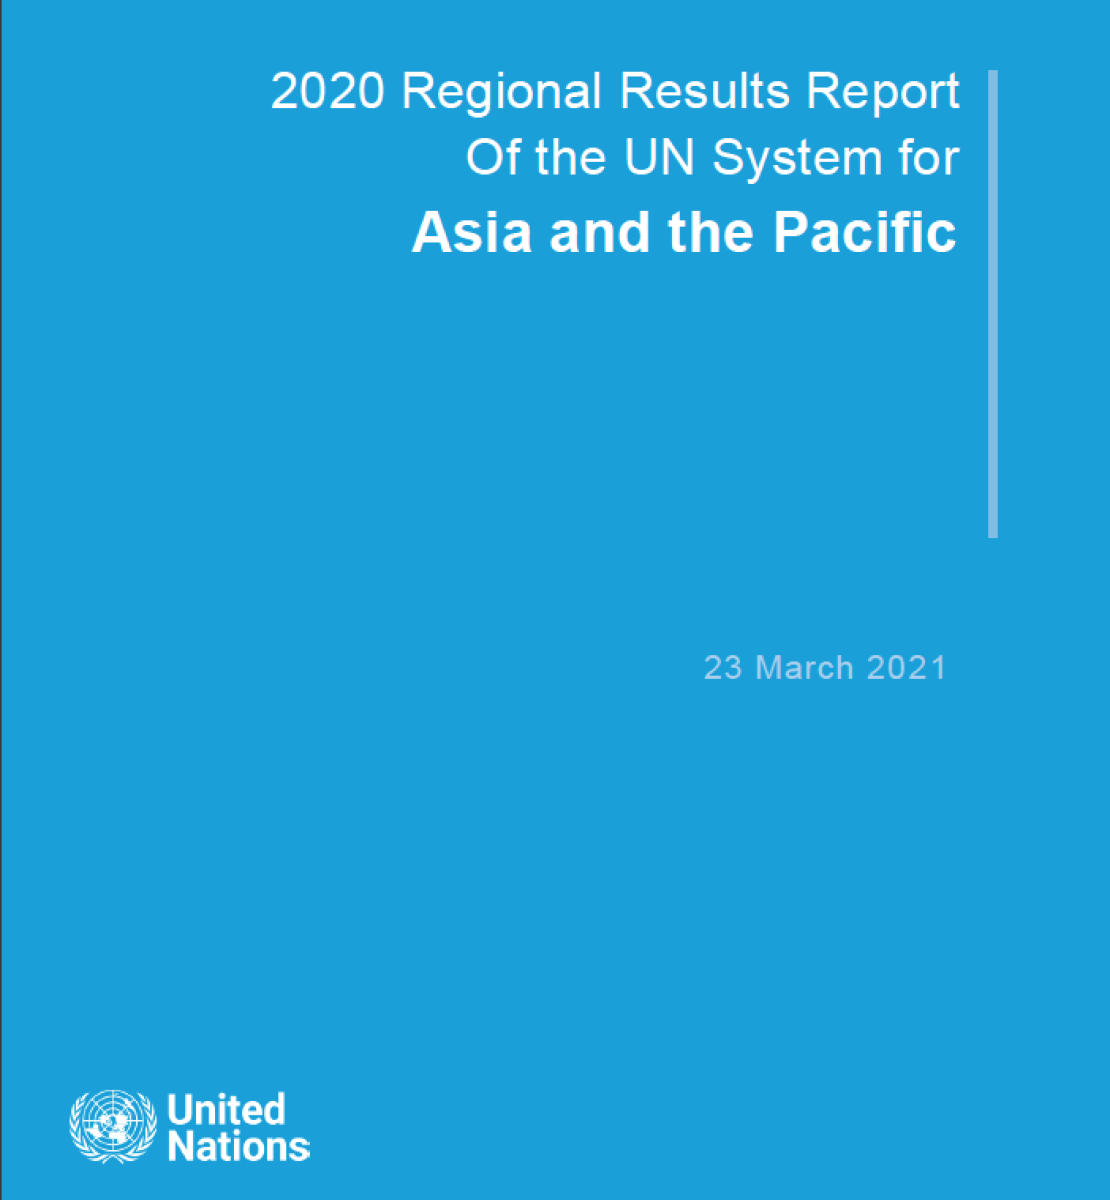 Couverture de rapport de couleur bleue sur laquelle figurent, en lettres blanches, le titre « Rapport sur les résultats régionaux 2020 du système des Nations Unies pour l'Asie et le Pacifique » en anglais, ainsi que le logo de l'ONU, en bas à gauche.